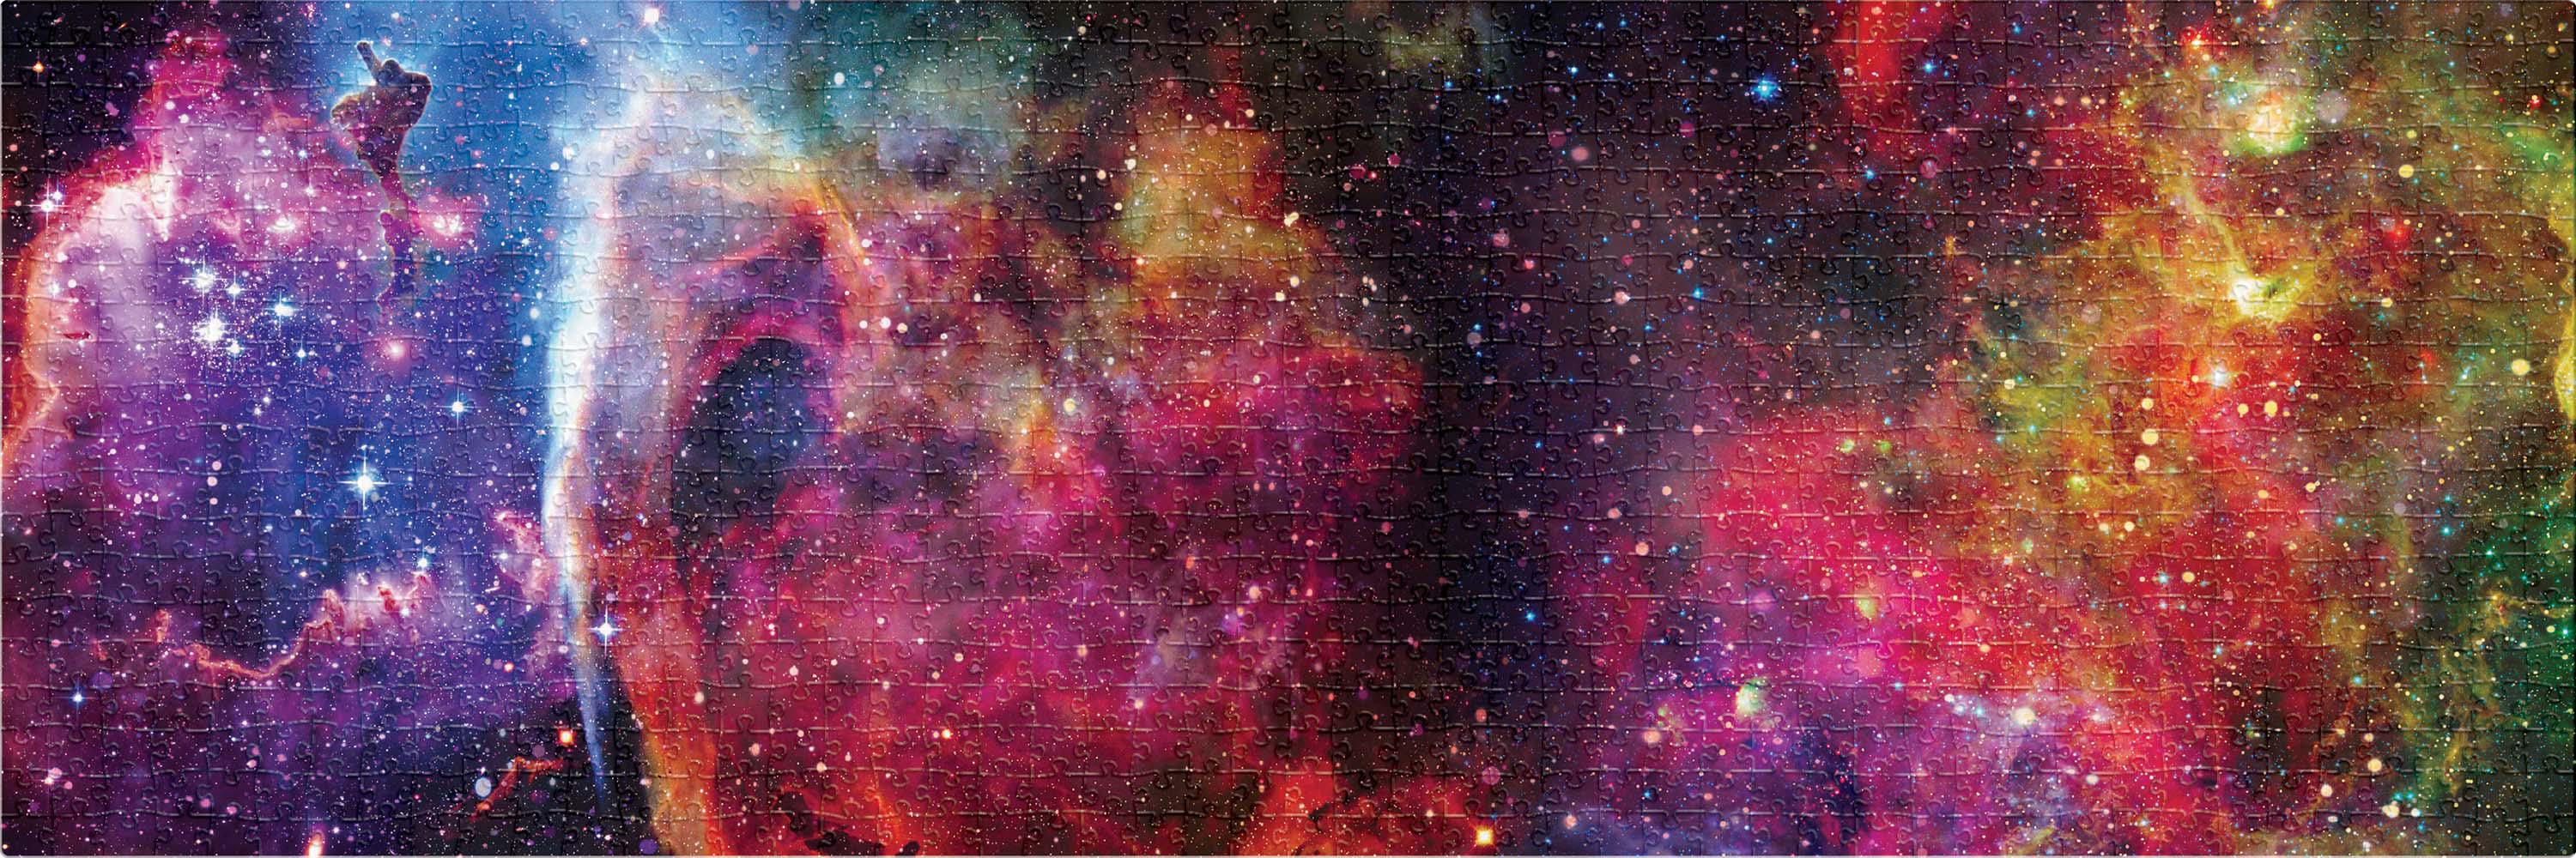 Пазли тришарові Interdruk Galaxy 1, панорамні, 1000 елементів - фото 2